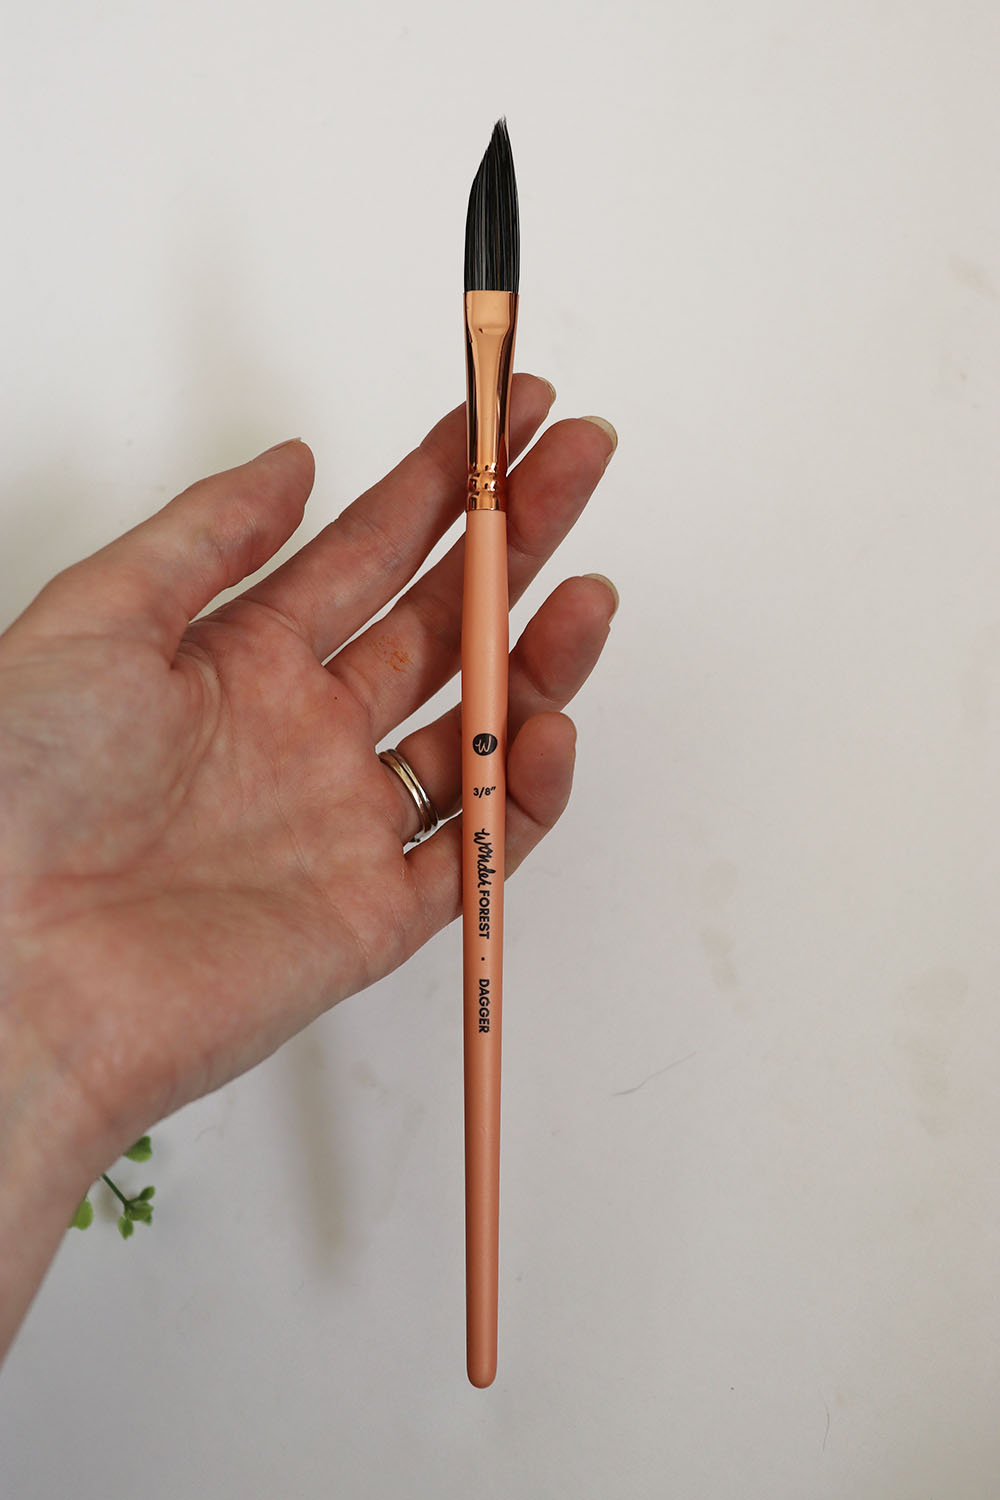 Connoisseur Risslon Brush Watercolor Dagger 3/8 in.